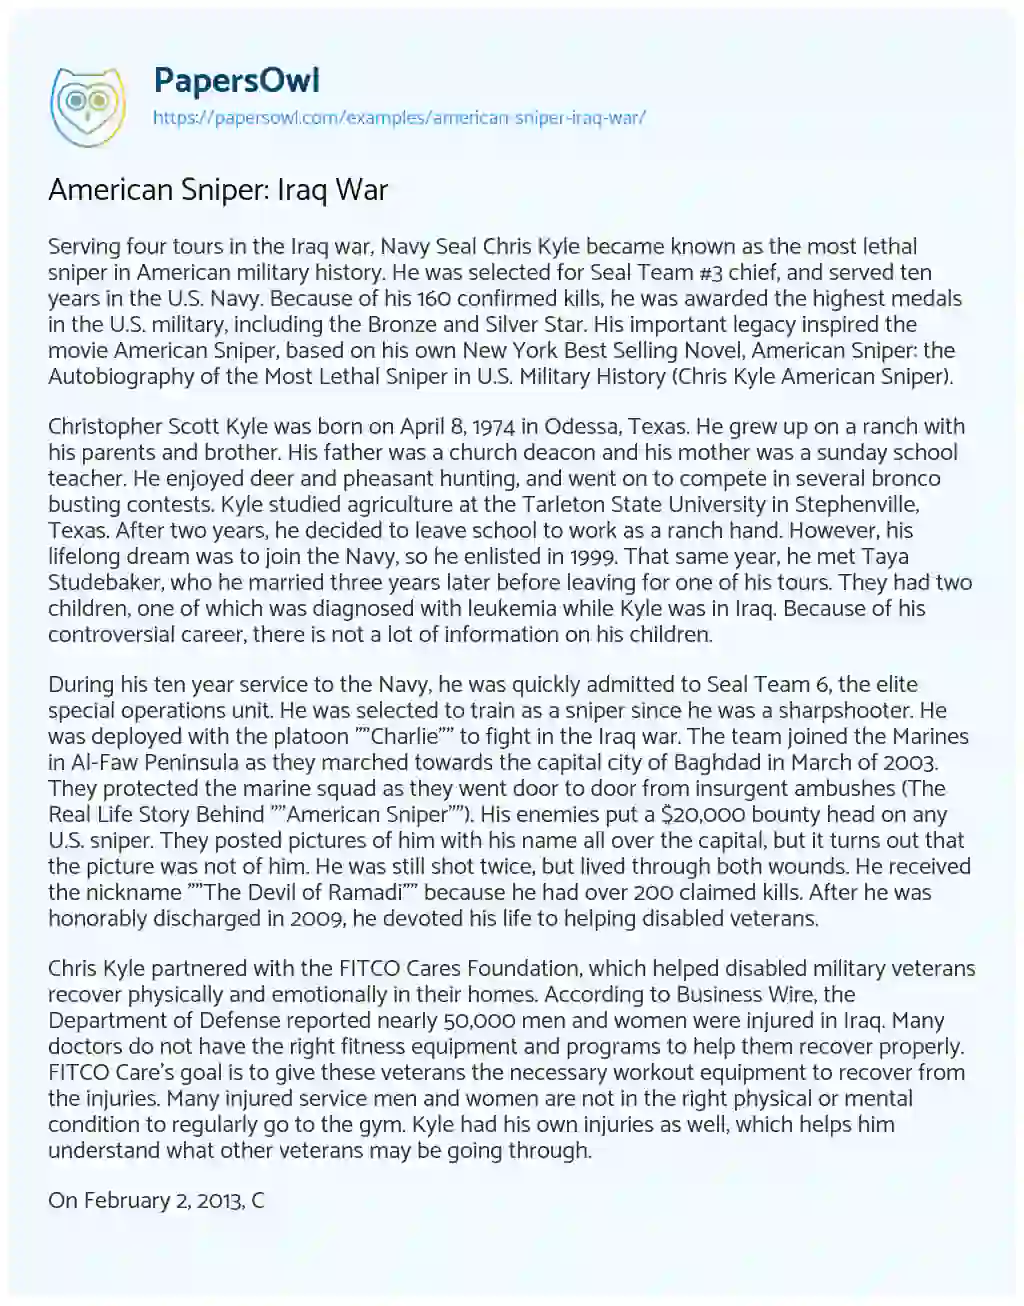 Essay on American Sniper: Iraq War